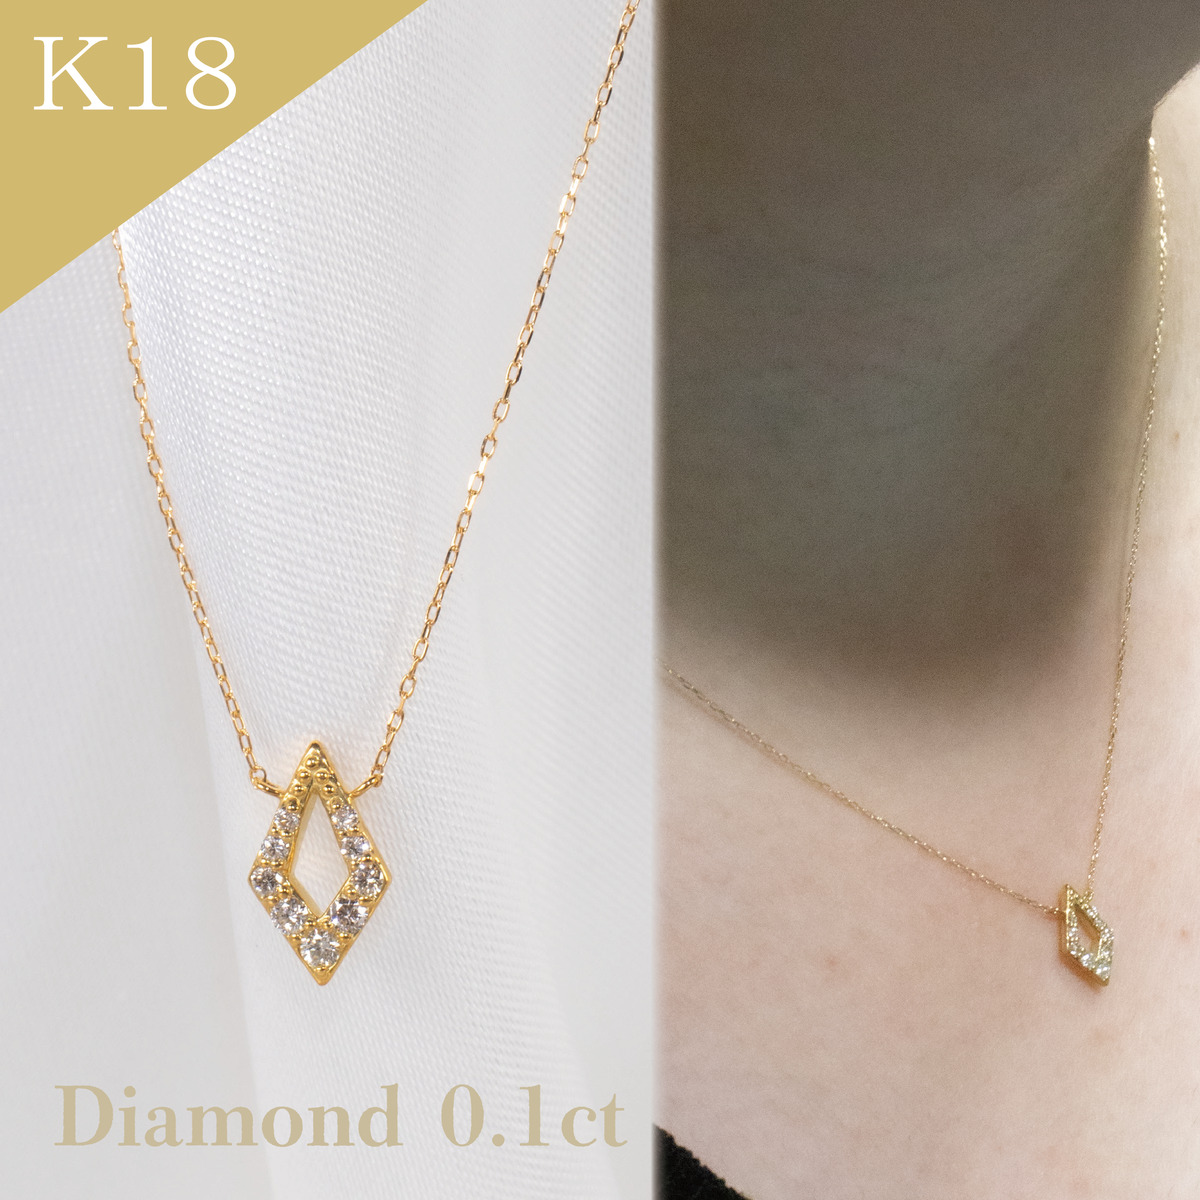 K18YG ダイヤモンド デザインネックレス 4.4g D0.25 40cm 仕上げ済